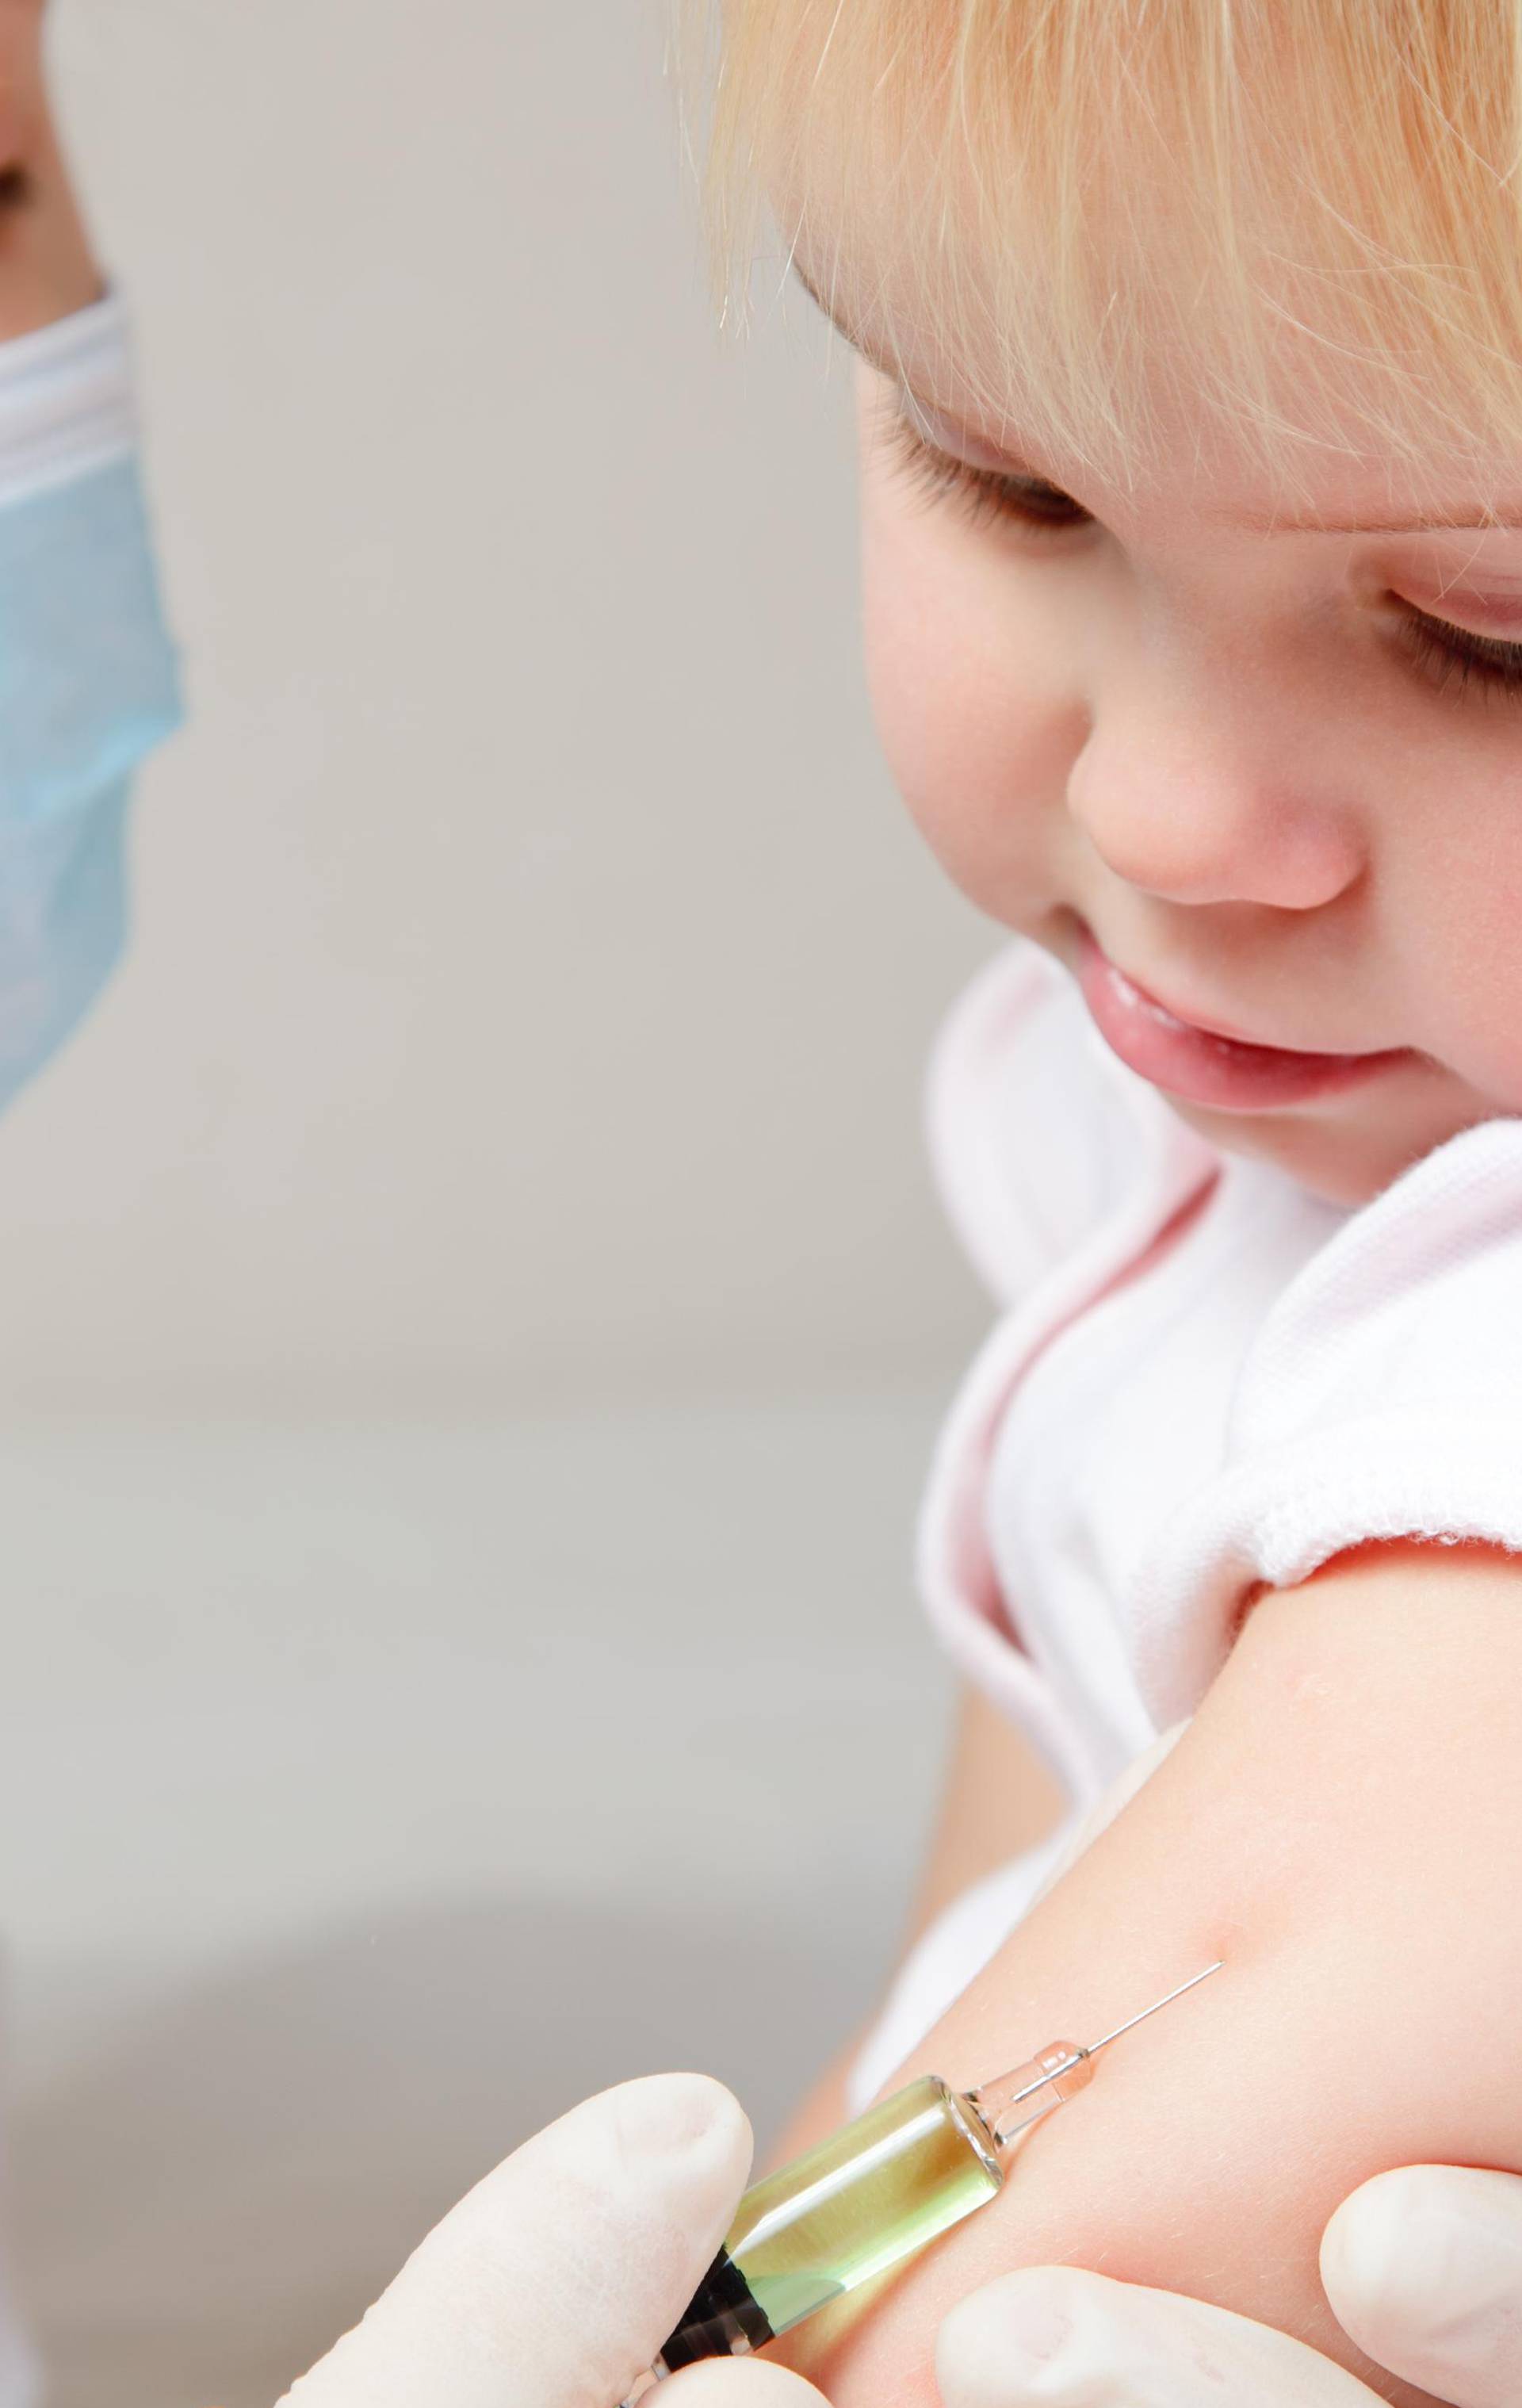 'Protivnici cijepljenja su među najvećim prijetnjama zdravlju'